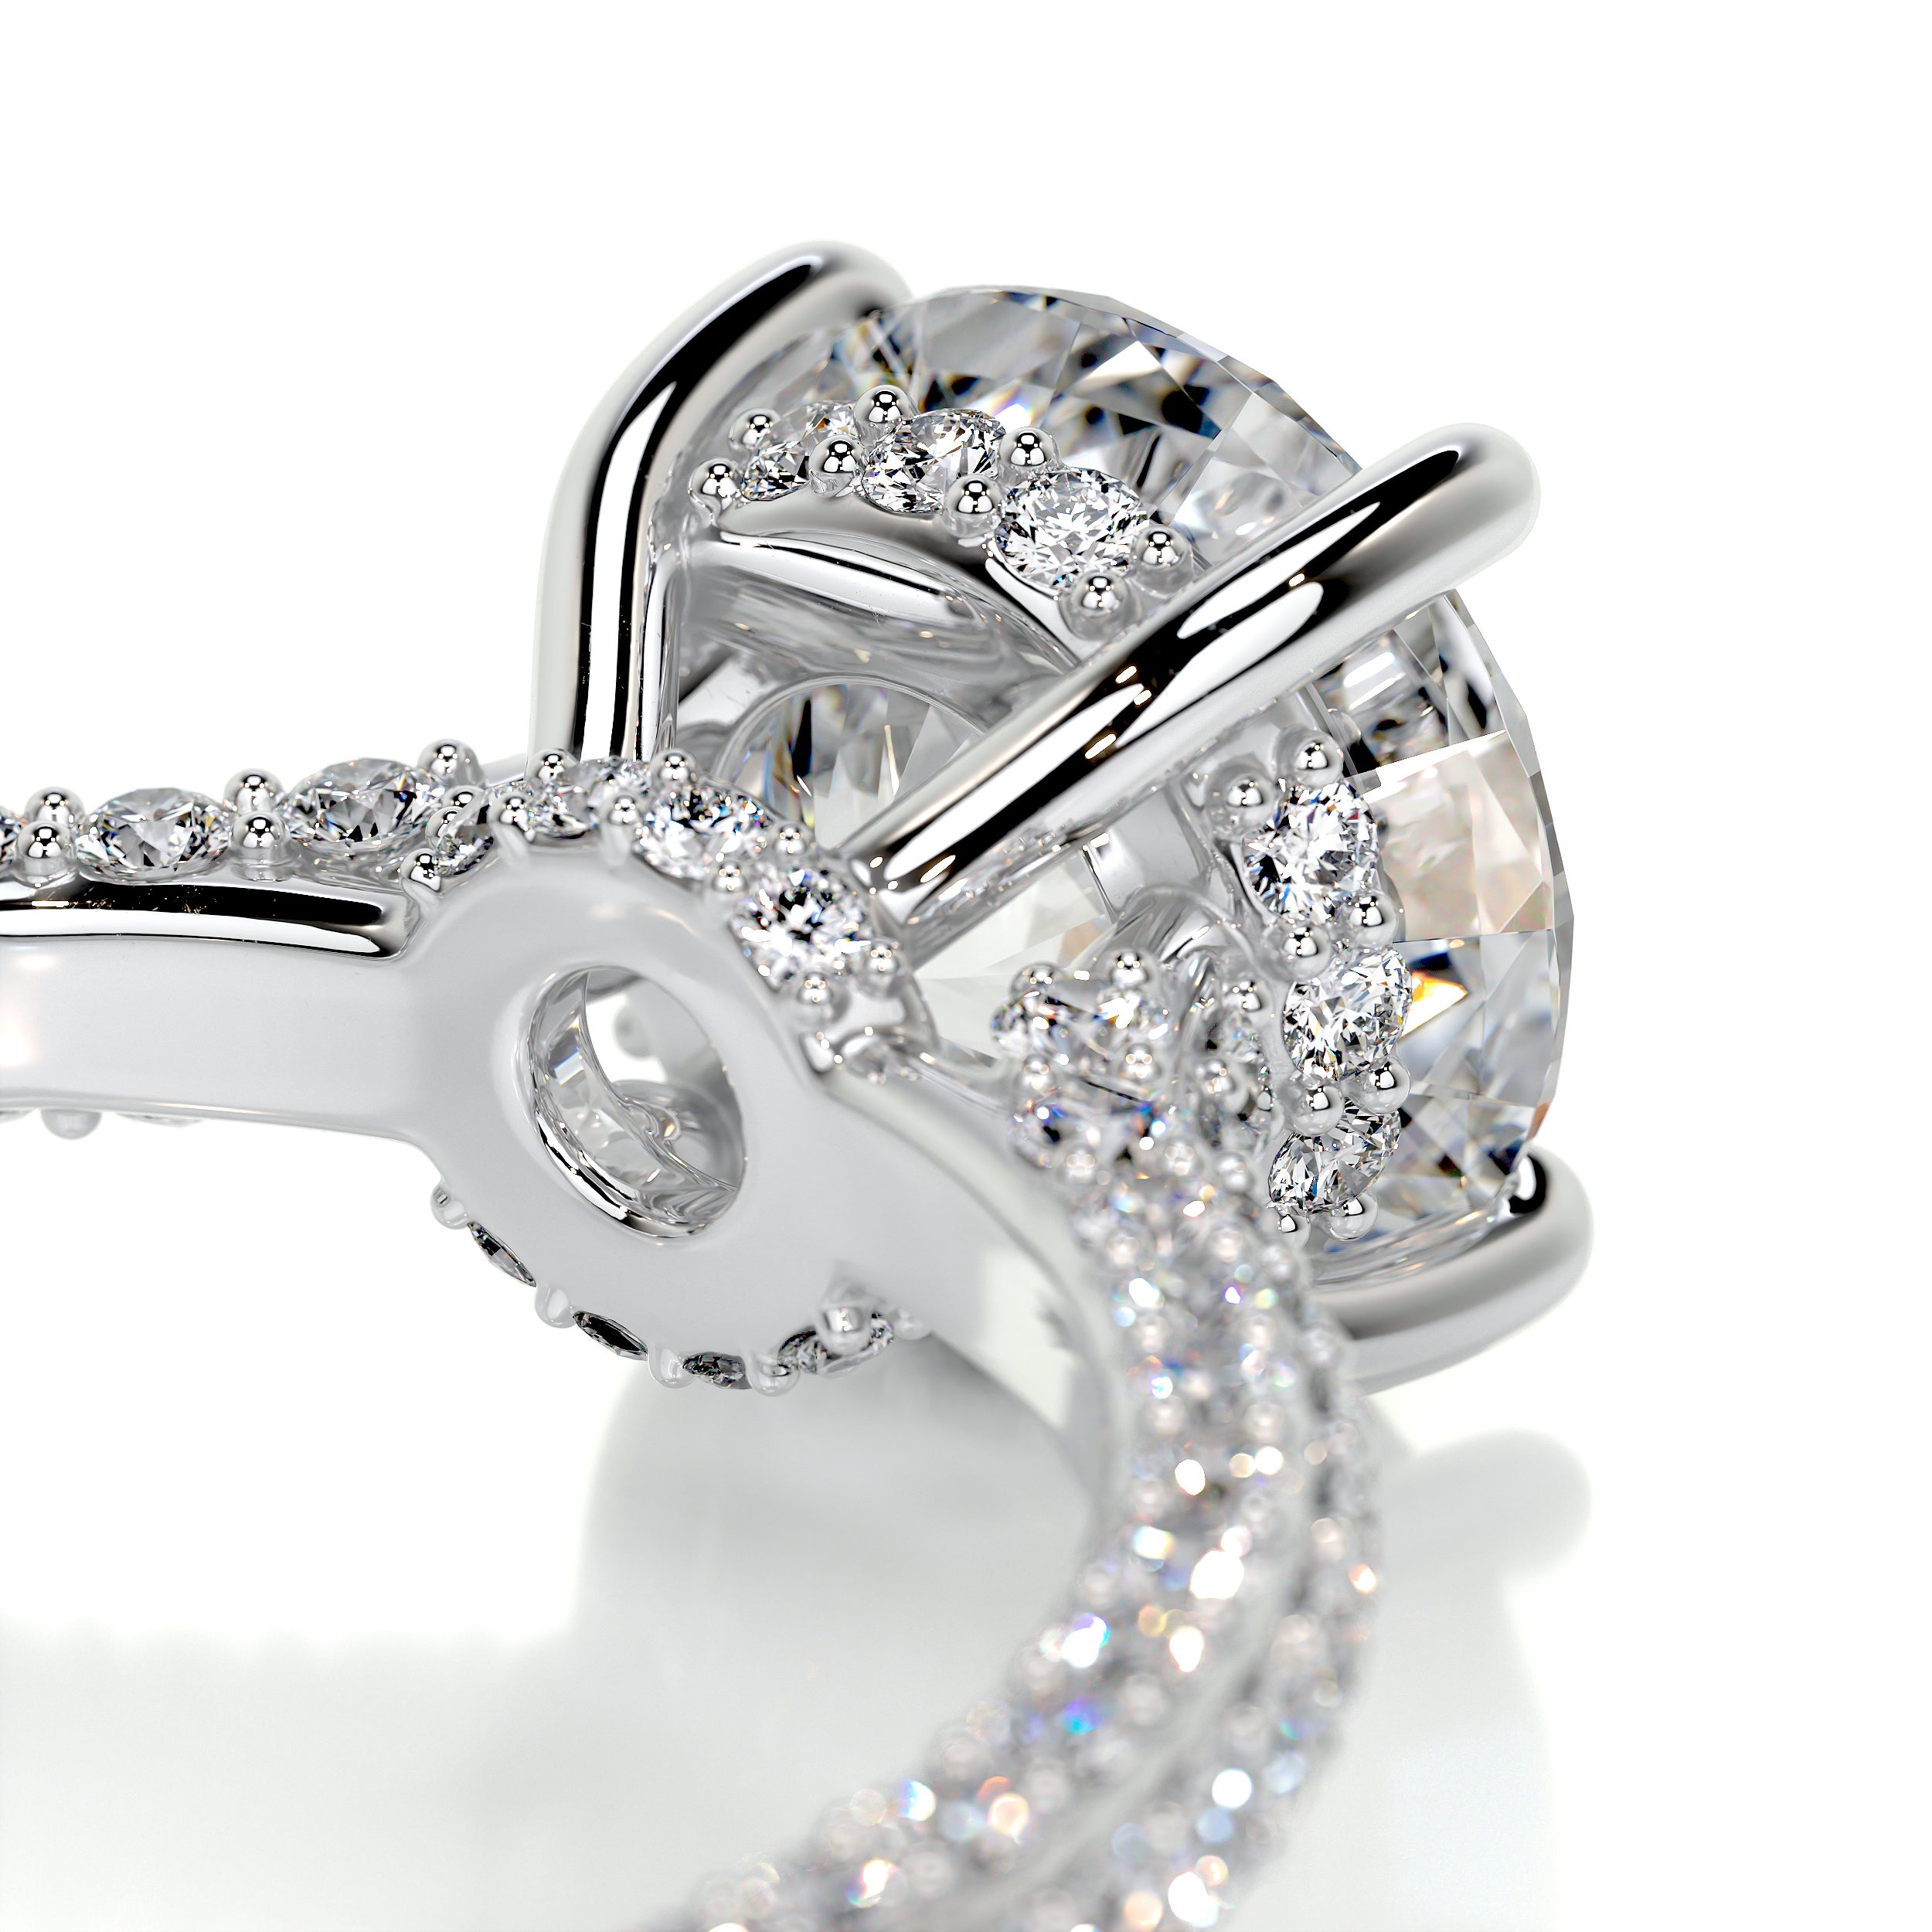 Michaela Diamond Engagement Ring   (2.25 Carat) -Platinum